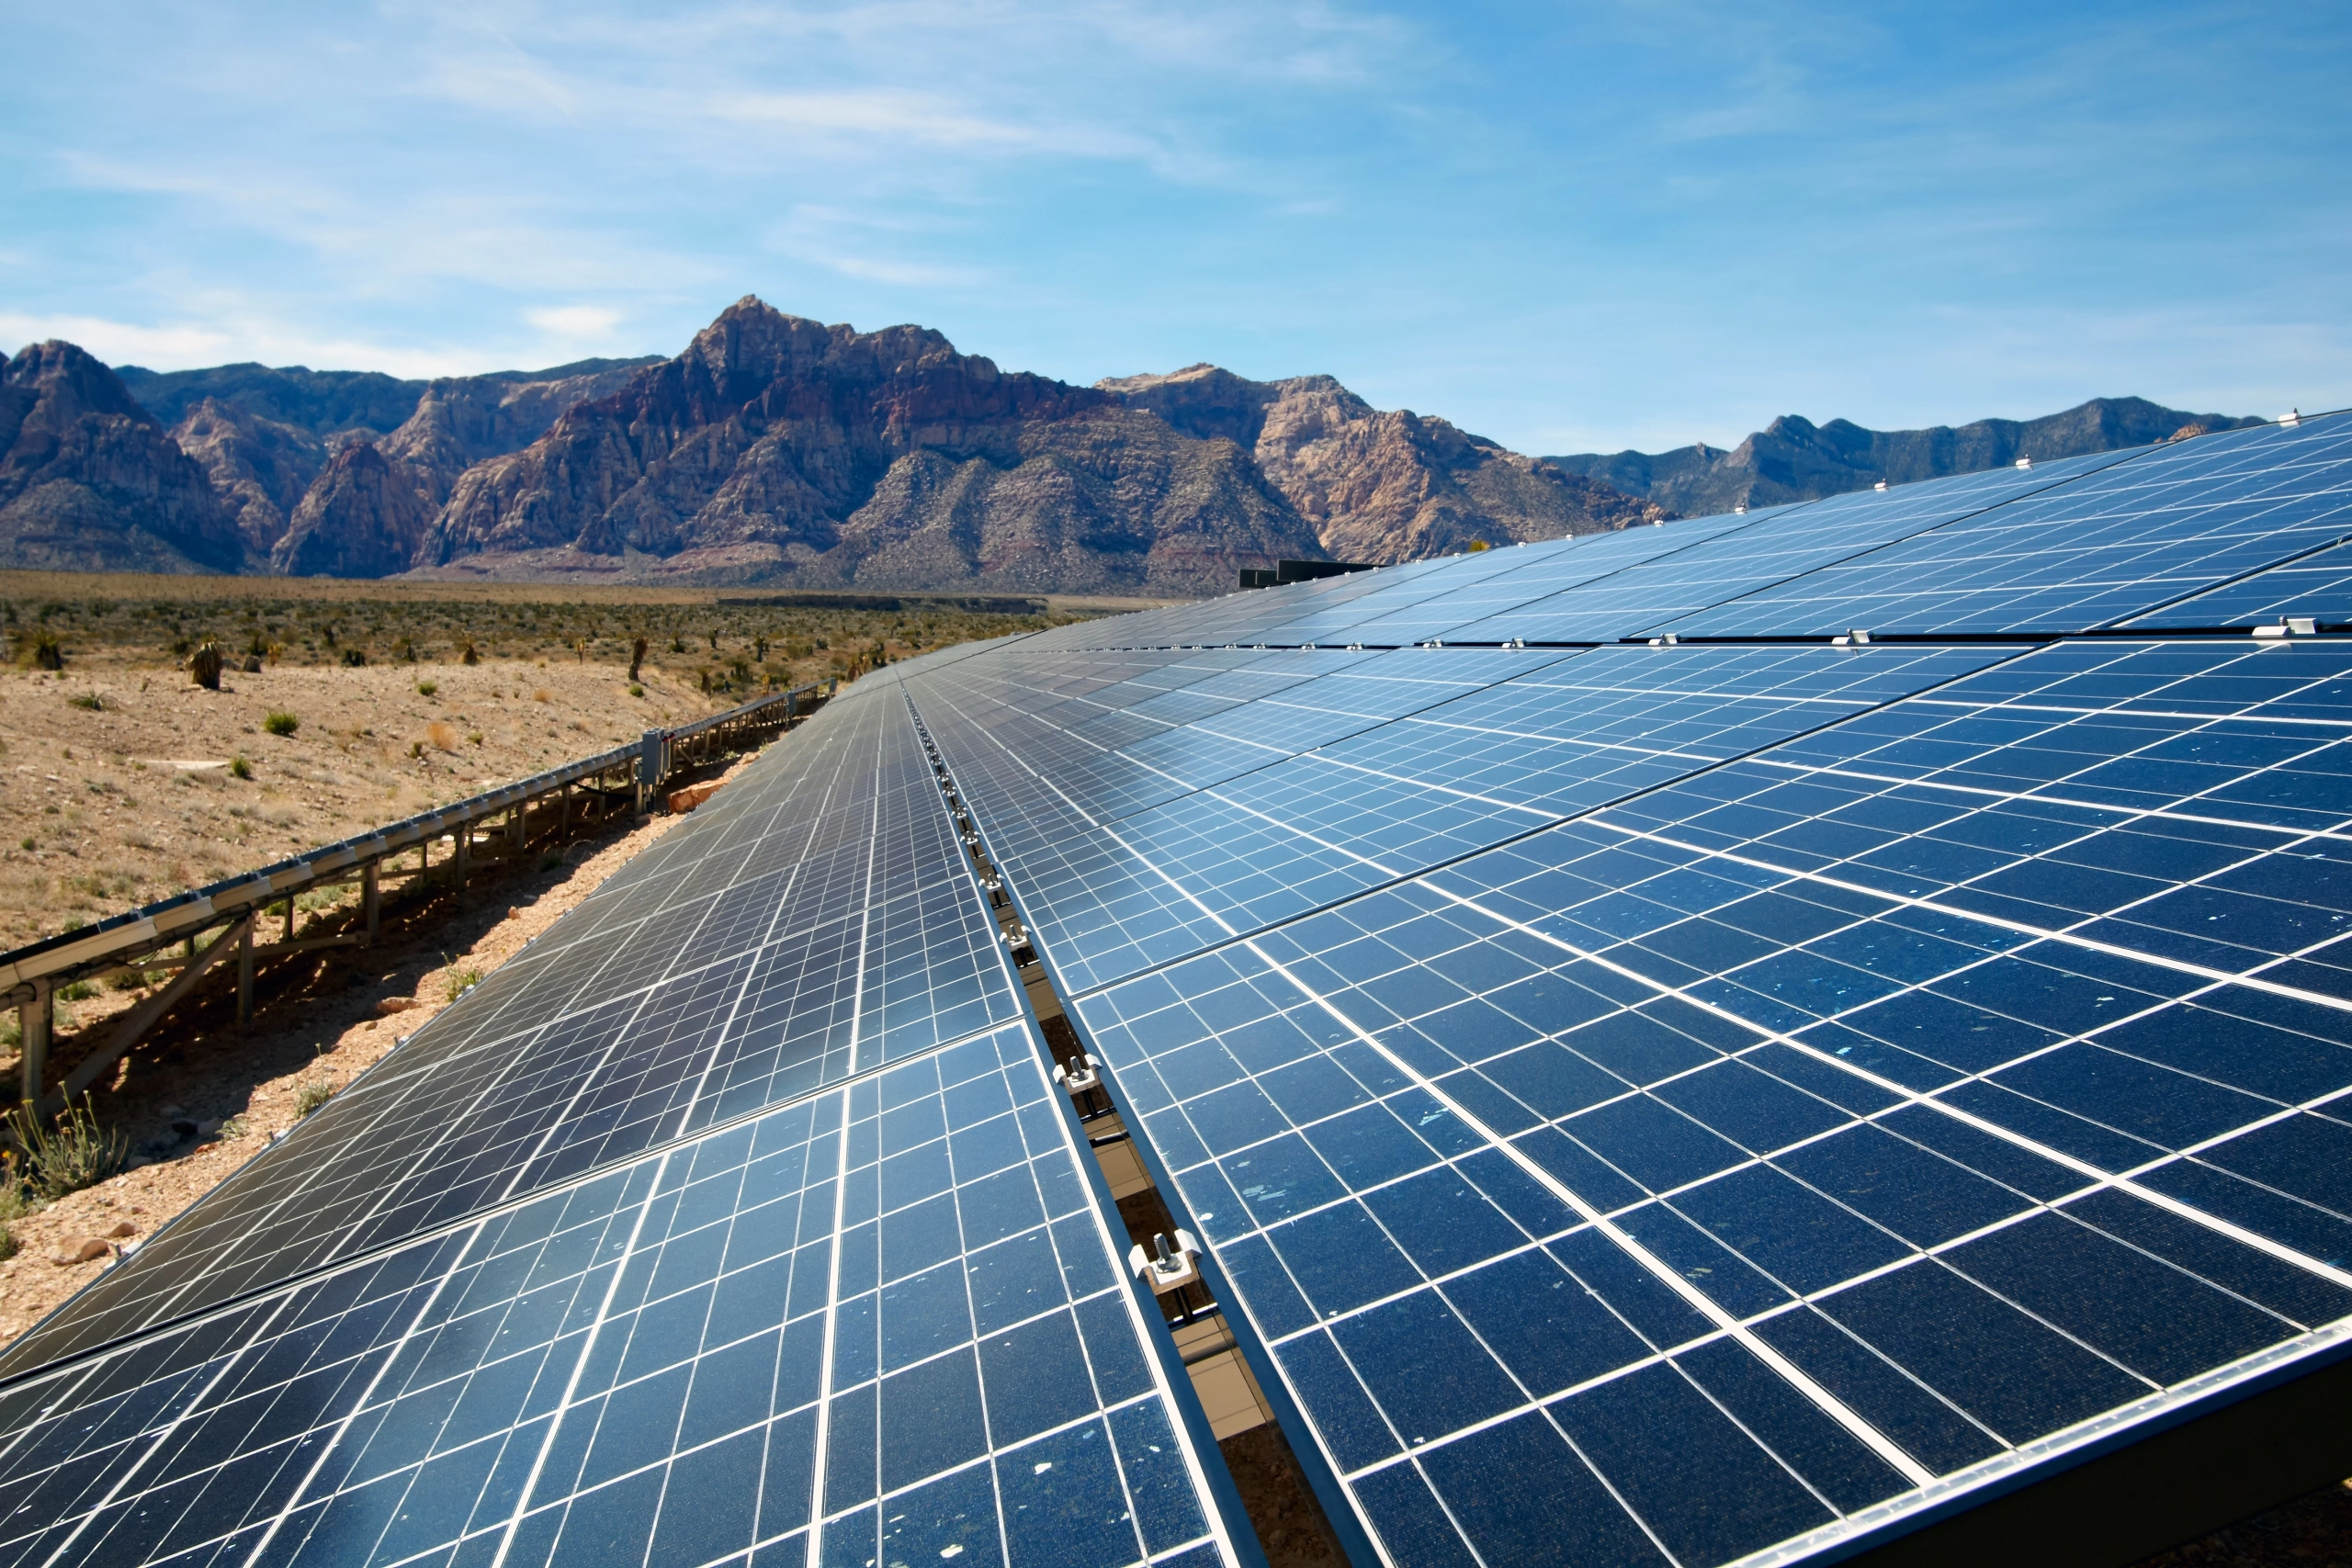 Solar panels over desert in Arizona